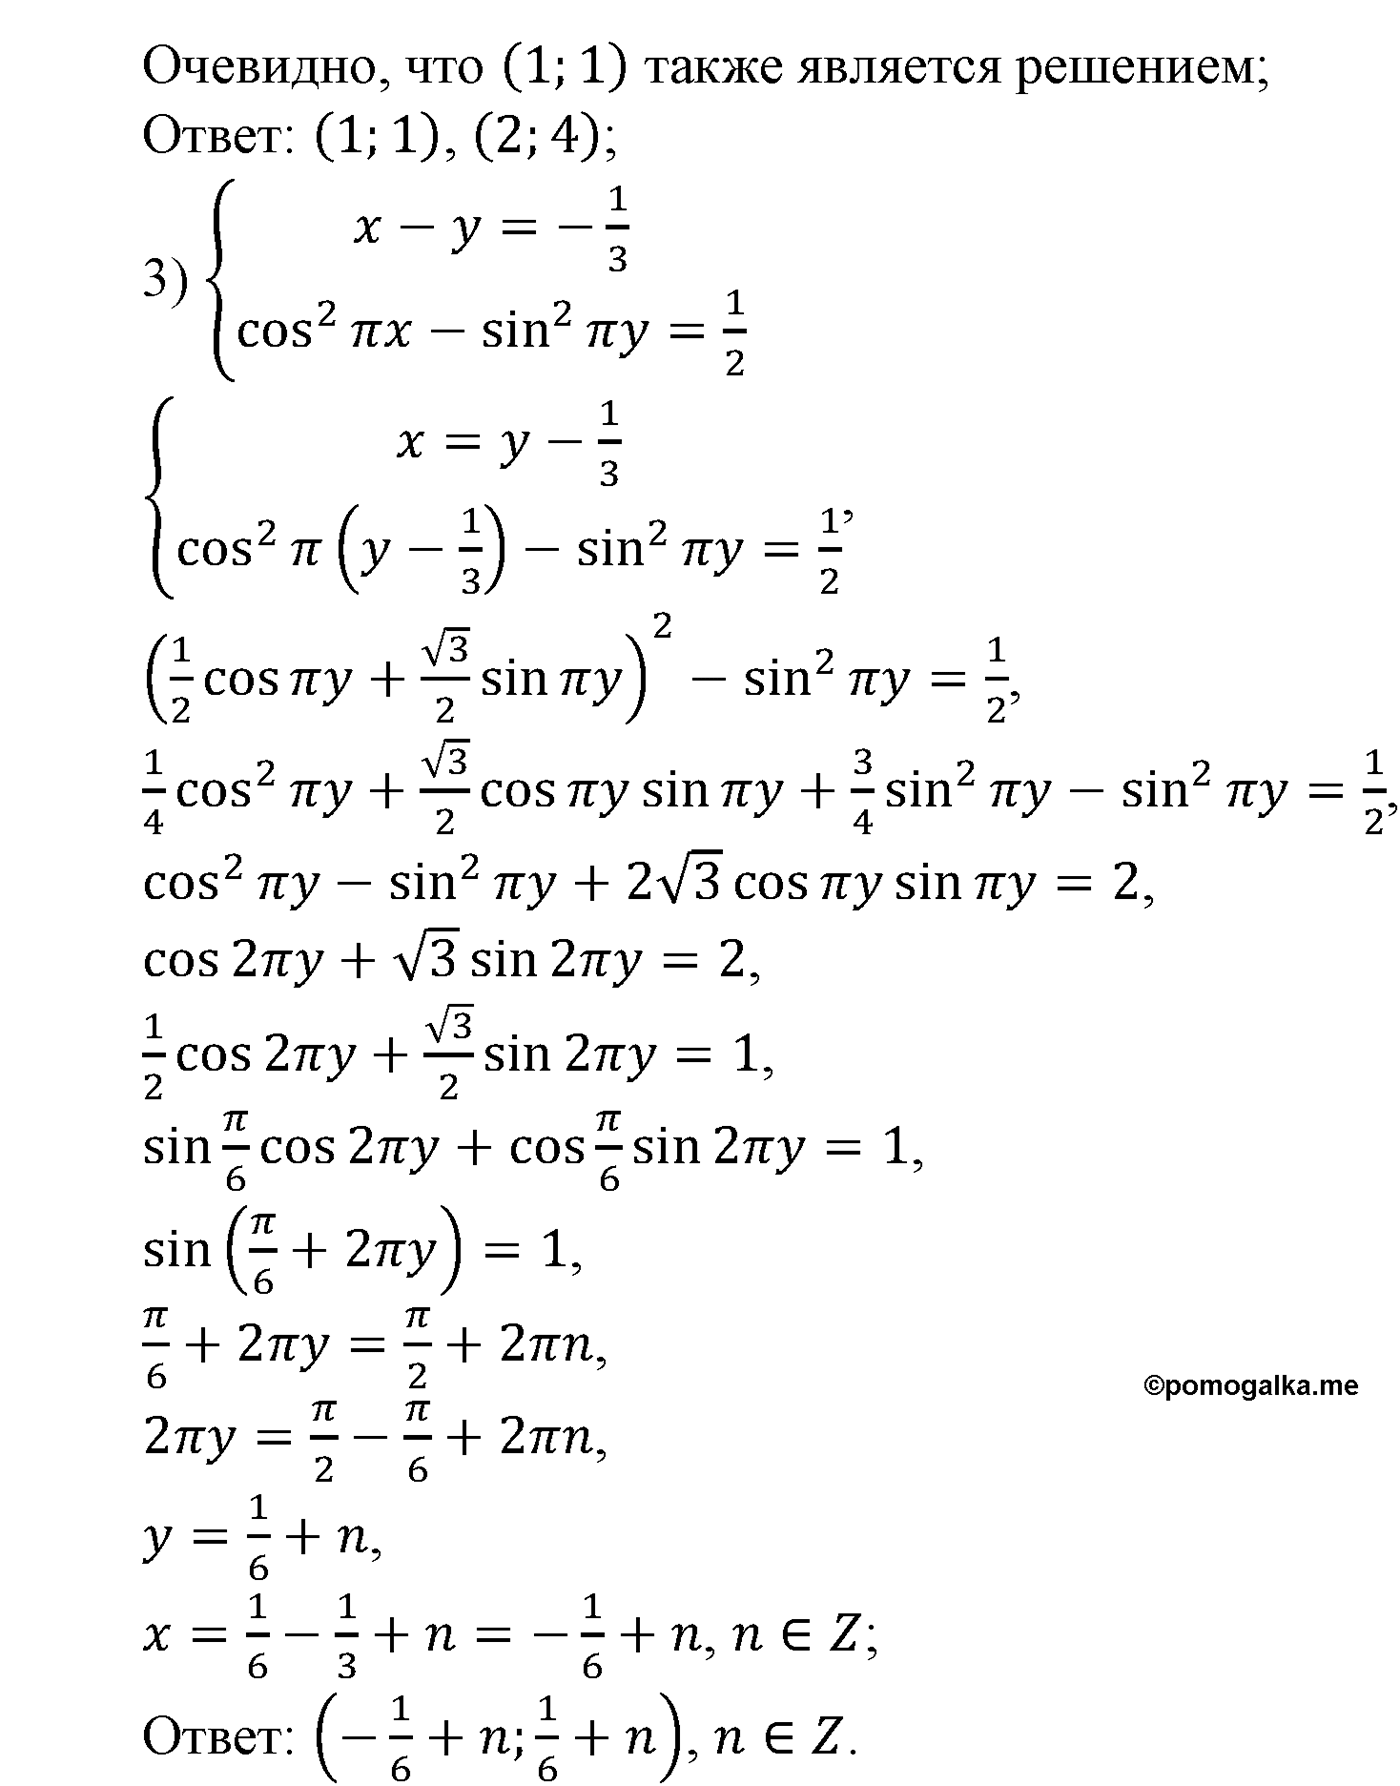 разбор задачи №1571 по алгебре за 10-11 класс из учебника Алимова, Колягина